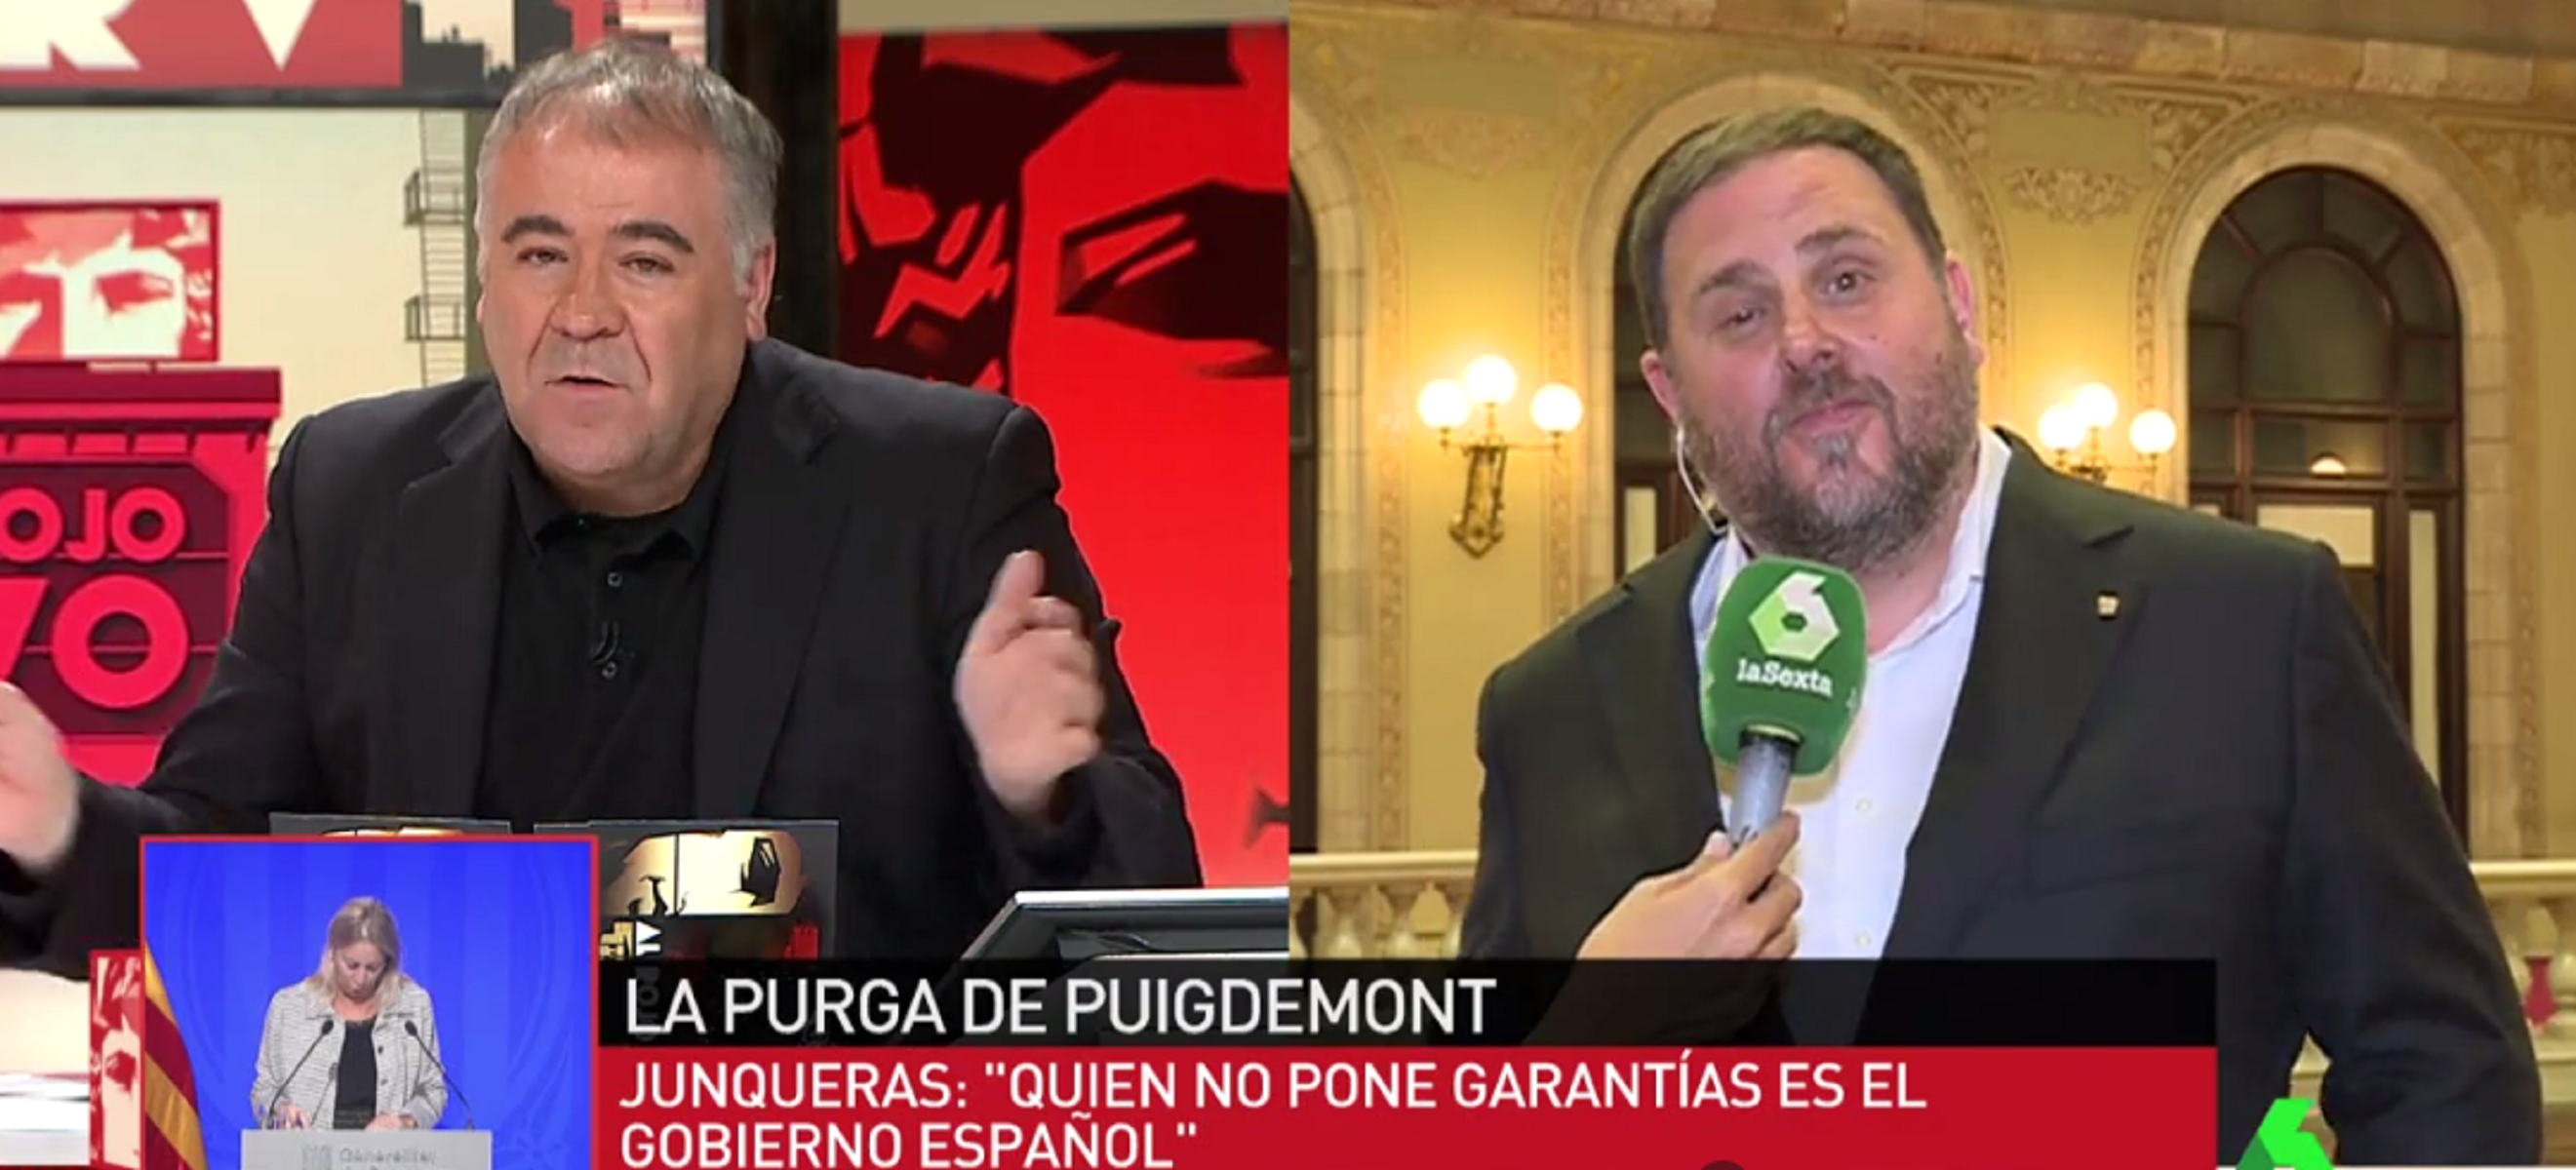 Les clatellades entre Junqueras i García Ferreras pel referèndum